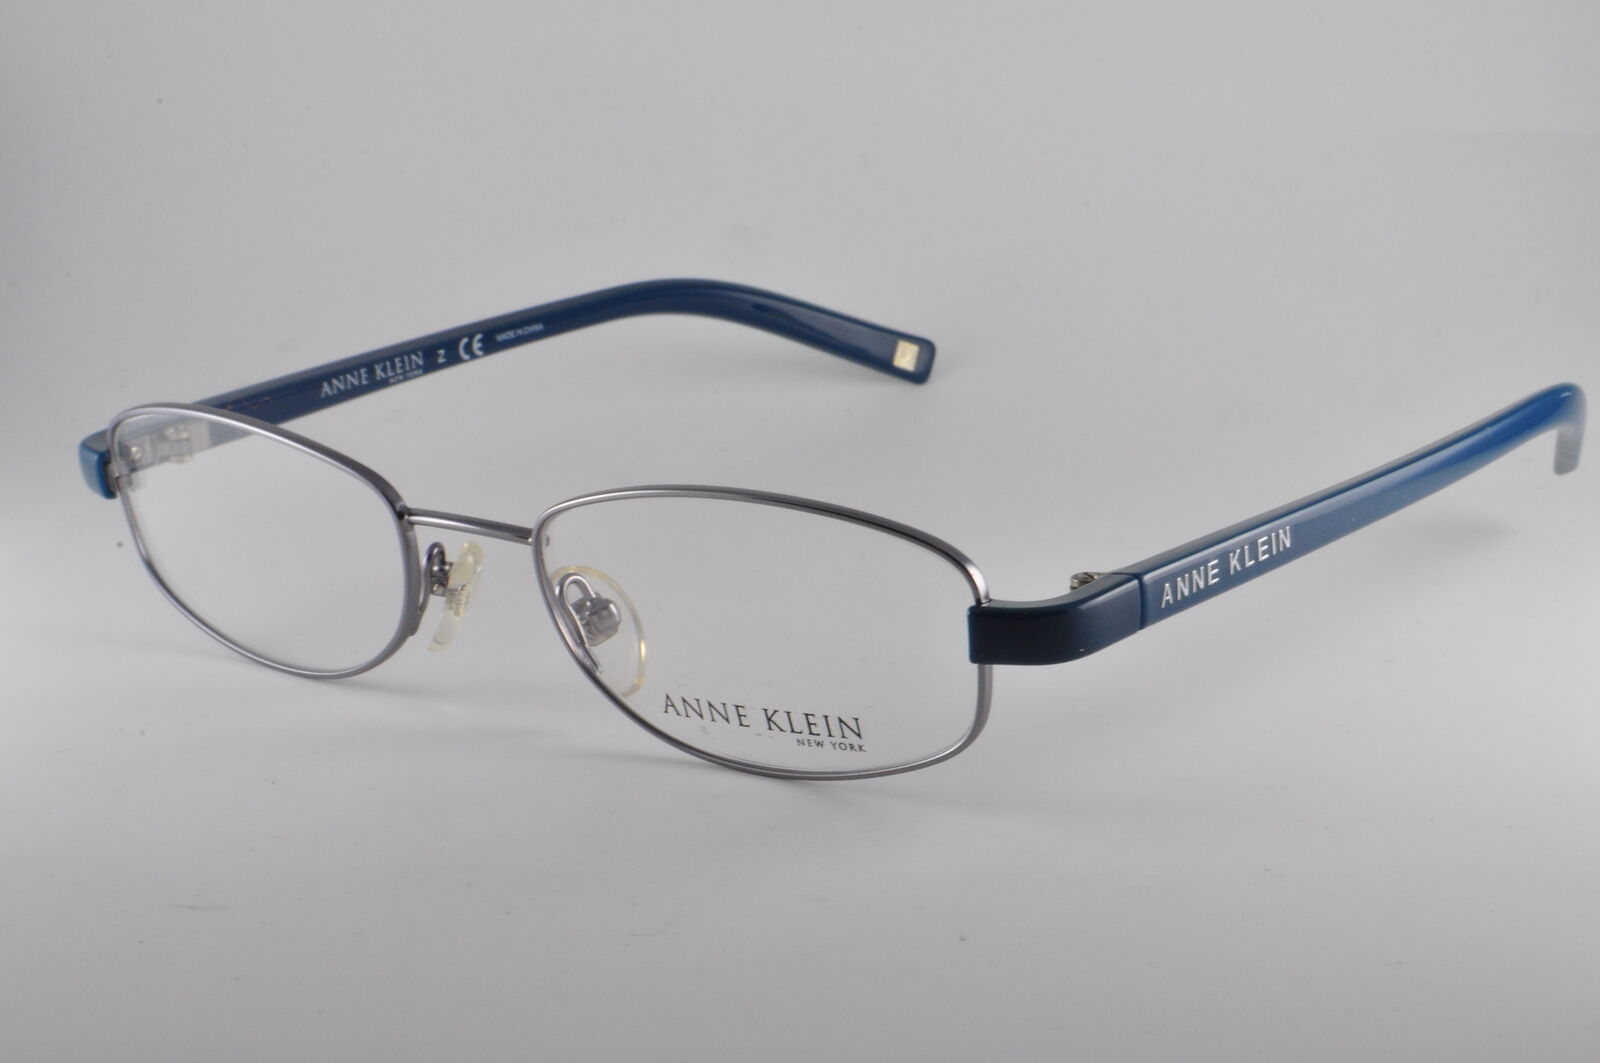 Anne Klein Eyeglasses AK 9111 555 Blue, Size 50-18-135